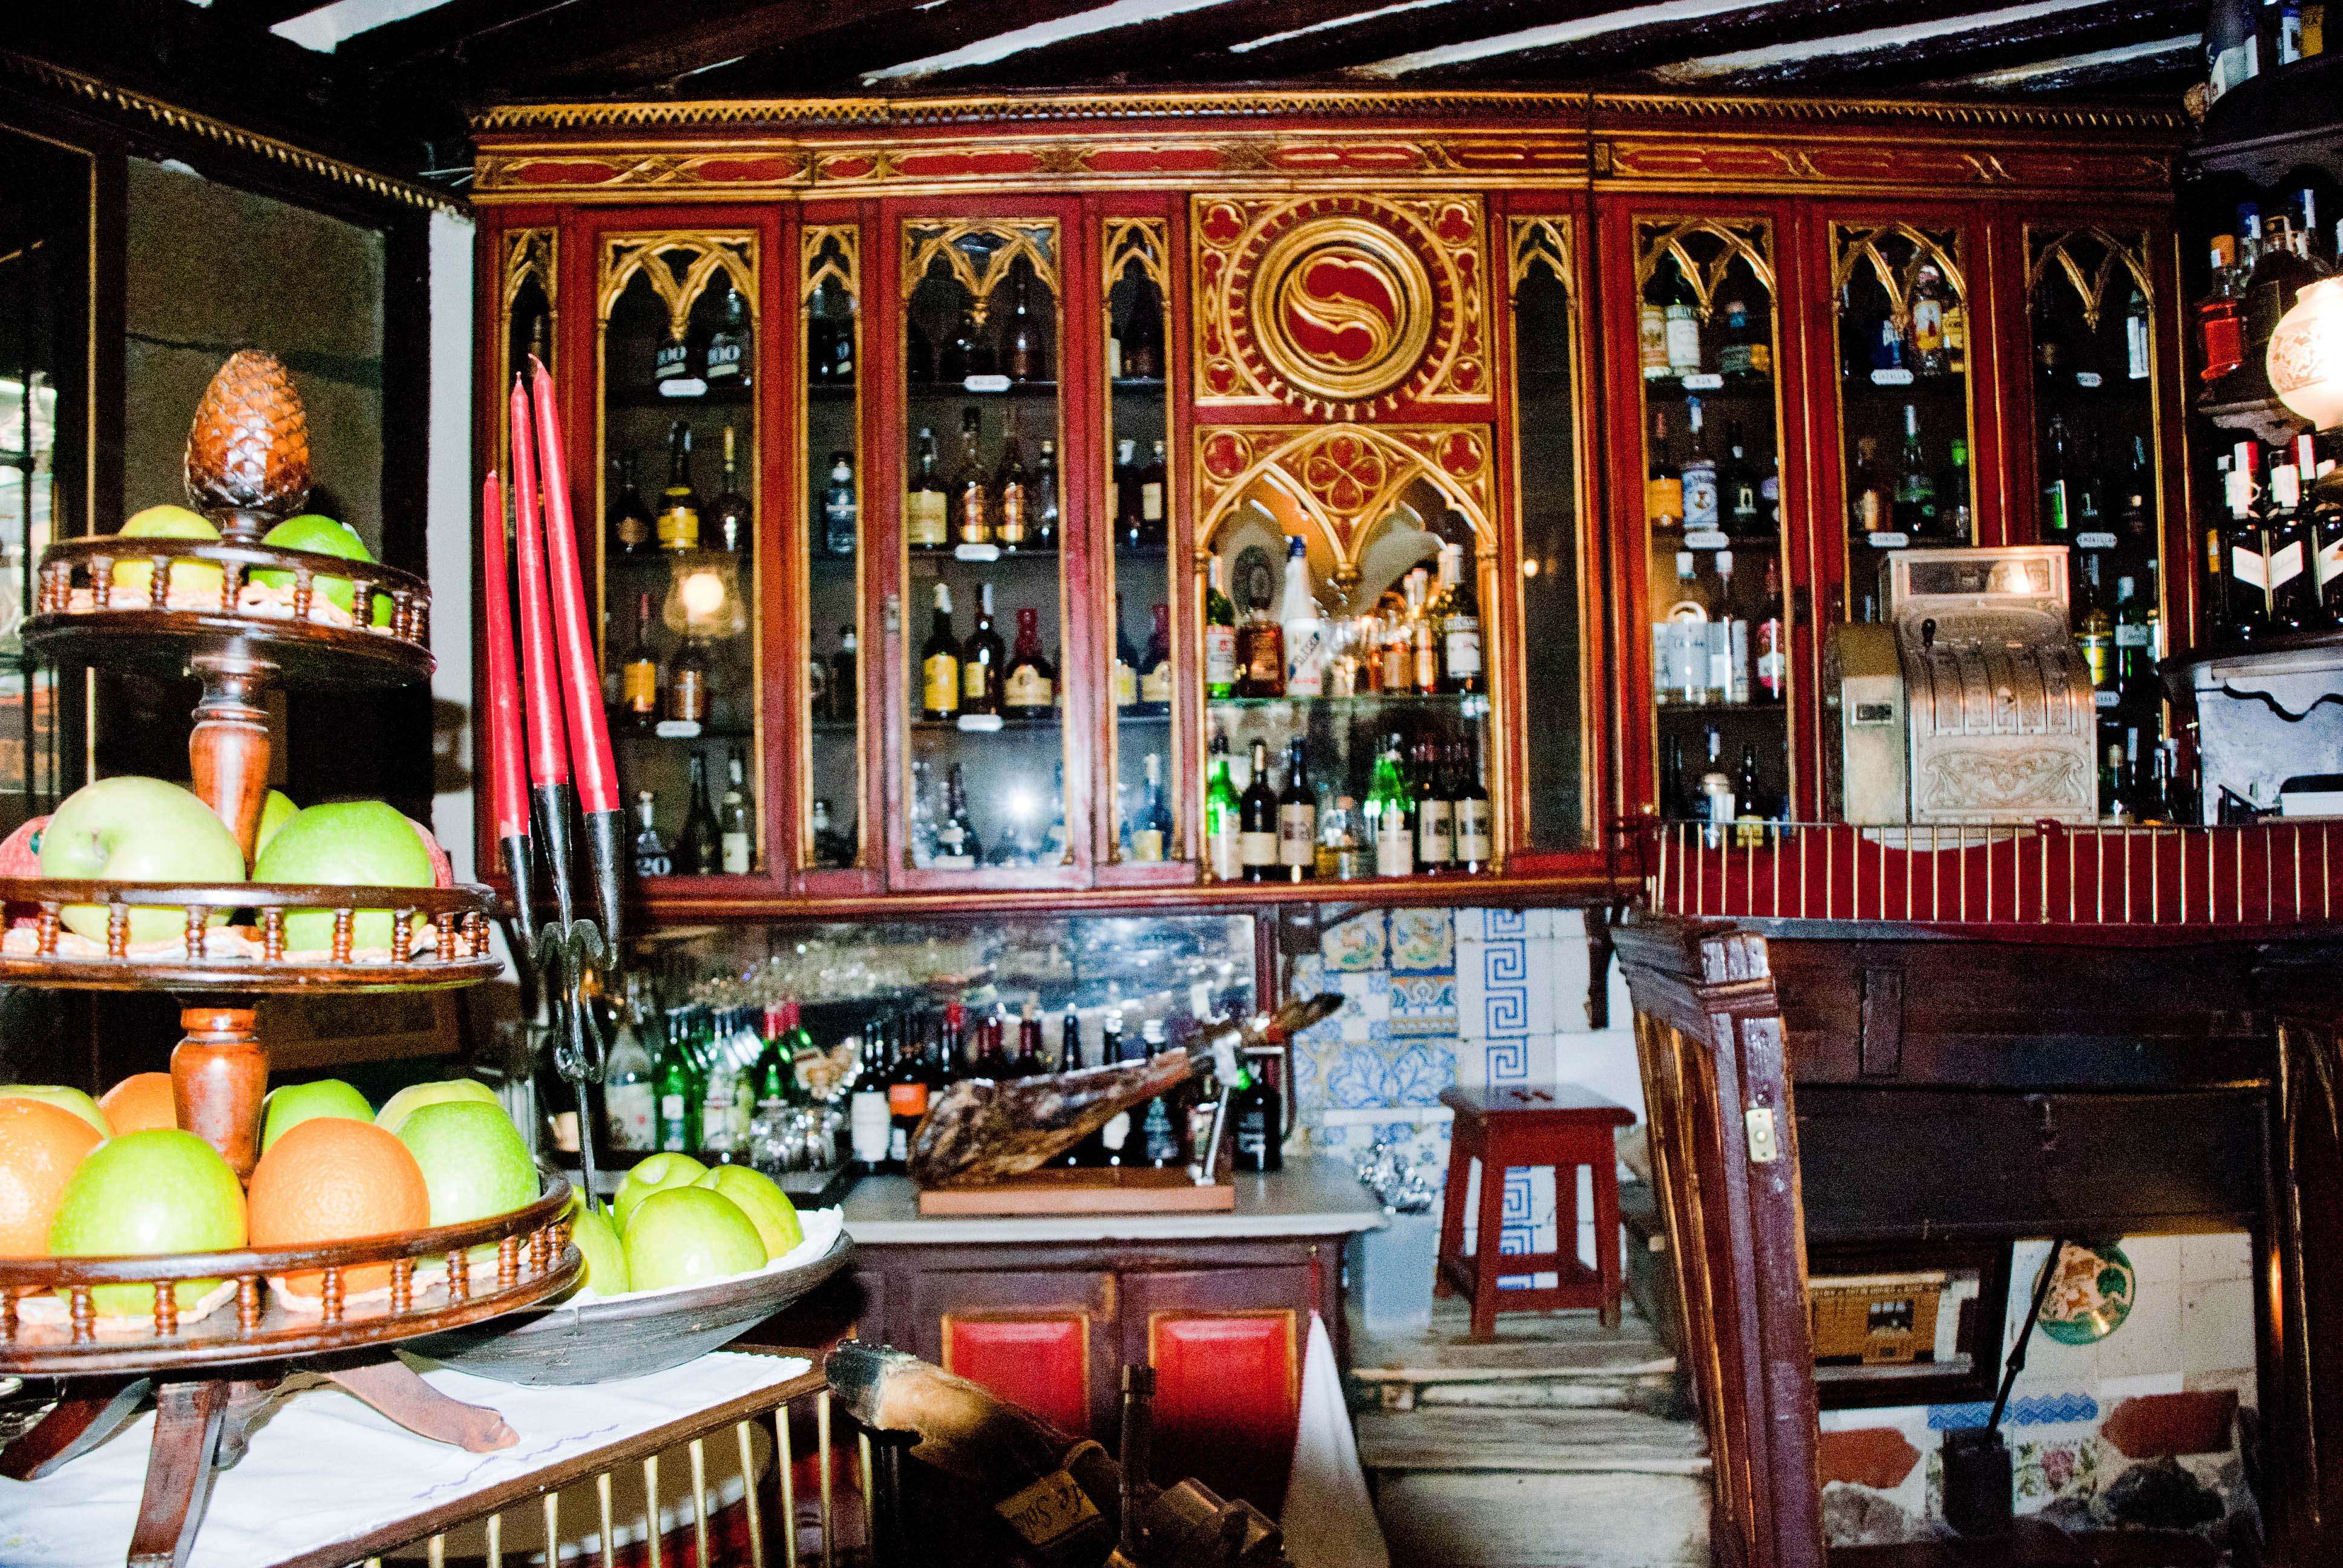 El restaurante mas antiguo del mundo - El Madrid olvidado (4)